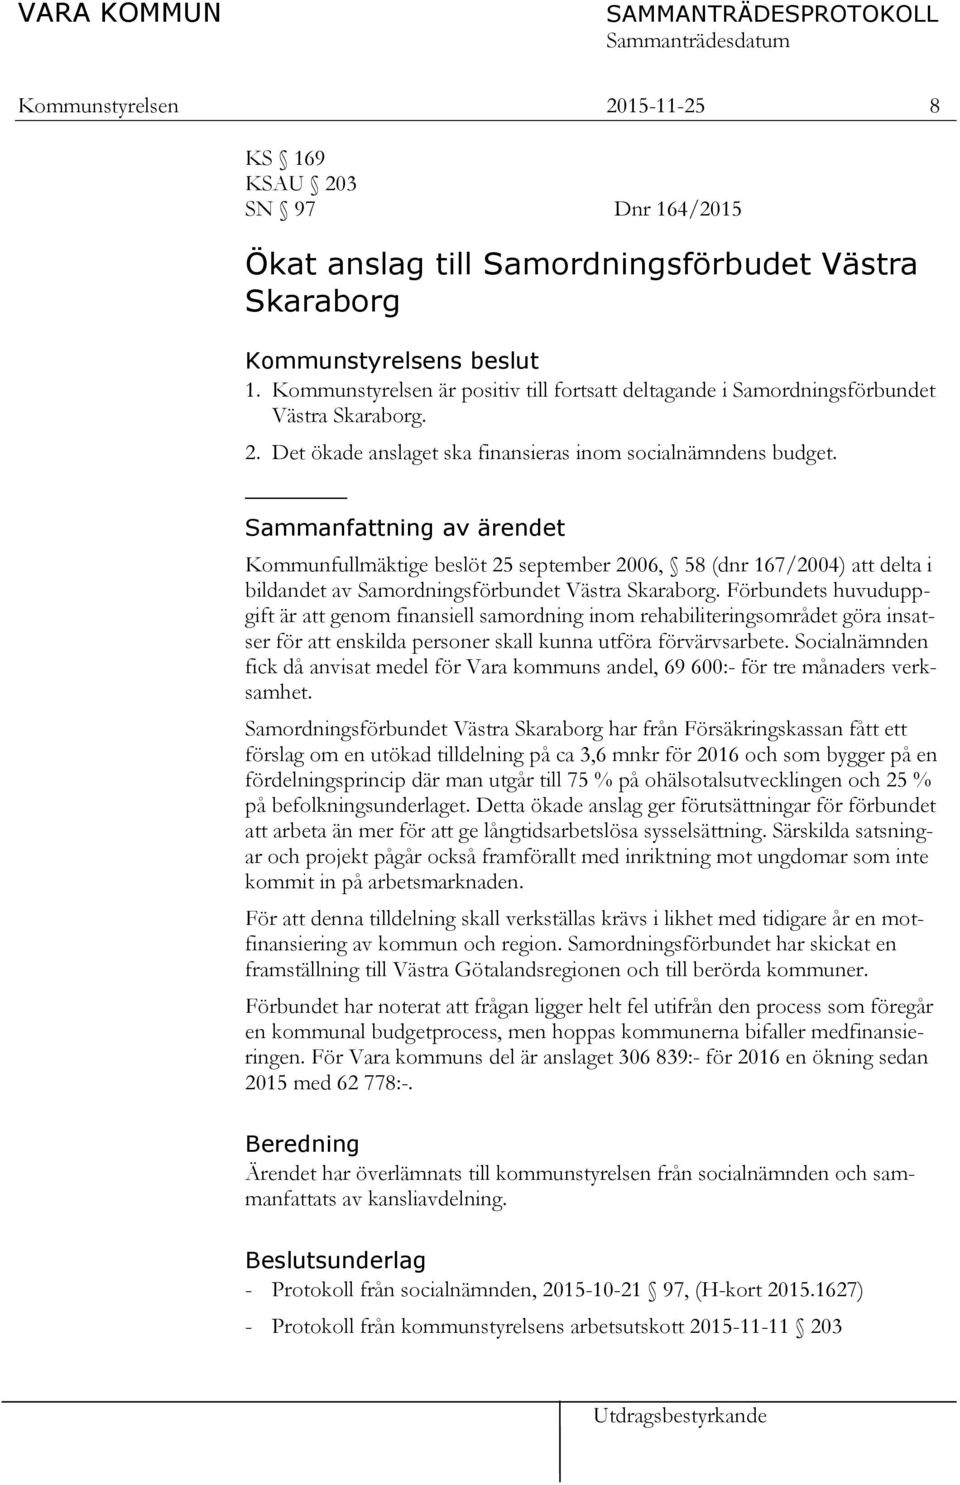 Sammanfattning av ärendet Kommunfullmäktige beslöt 25 september 2006, 58 (dnr 167/2004) att delta i bildandet av Samordningsförbundet Västra Skaraborg.